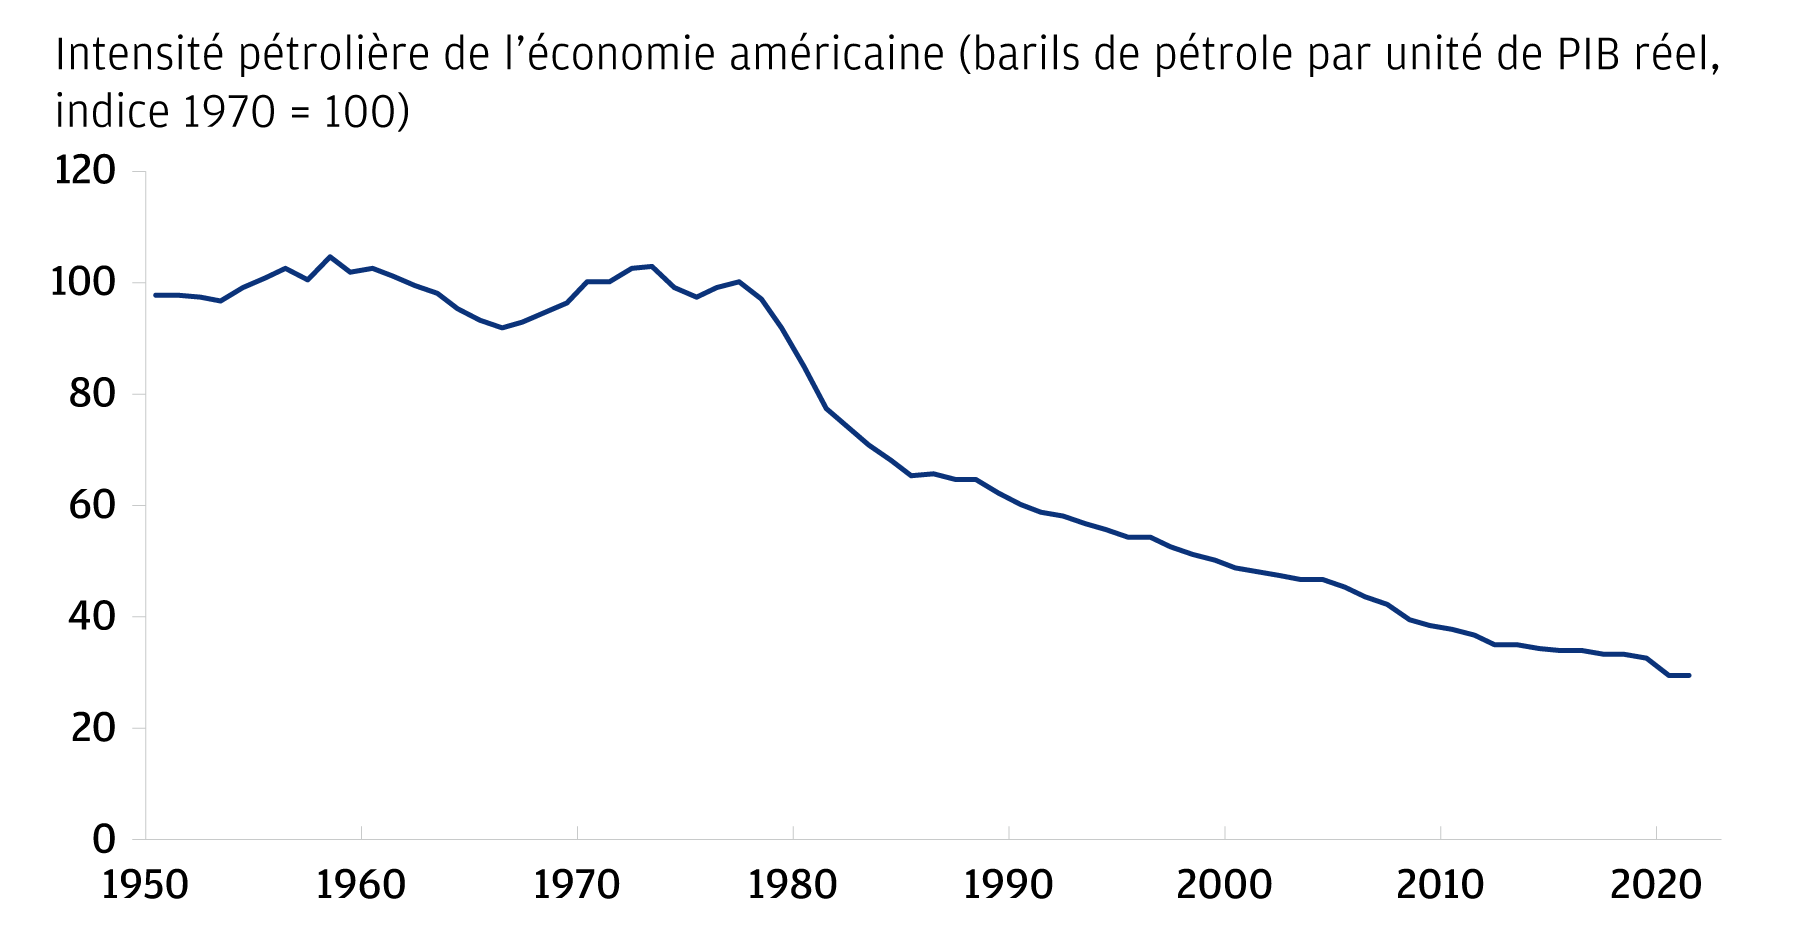 L'intensité pétrolière de l'économie américaine continue de baisser. Ce graphique illustre l'intensité pétrolière de l'économie américaine (mesurée en barils de pétrole par unité de PIB, indice 1970 = 100) de 1950 à aujourd'hui. Comme le montre le graphique, l'intensité pétrolière de l'économie américaine a chuté de façon spectaculaire pour atteindre presque un tiers de ses niveaux élevés des années 1970.